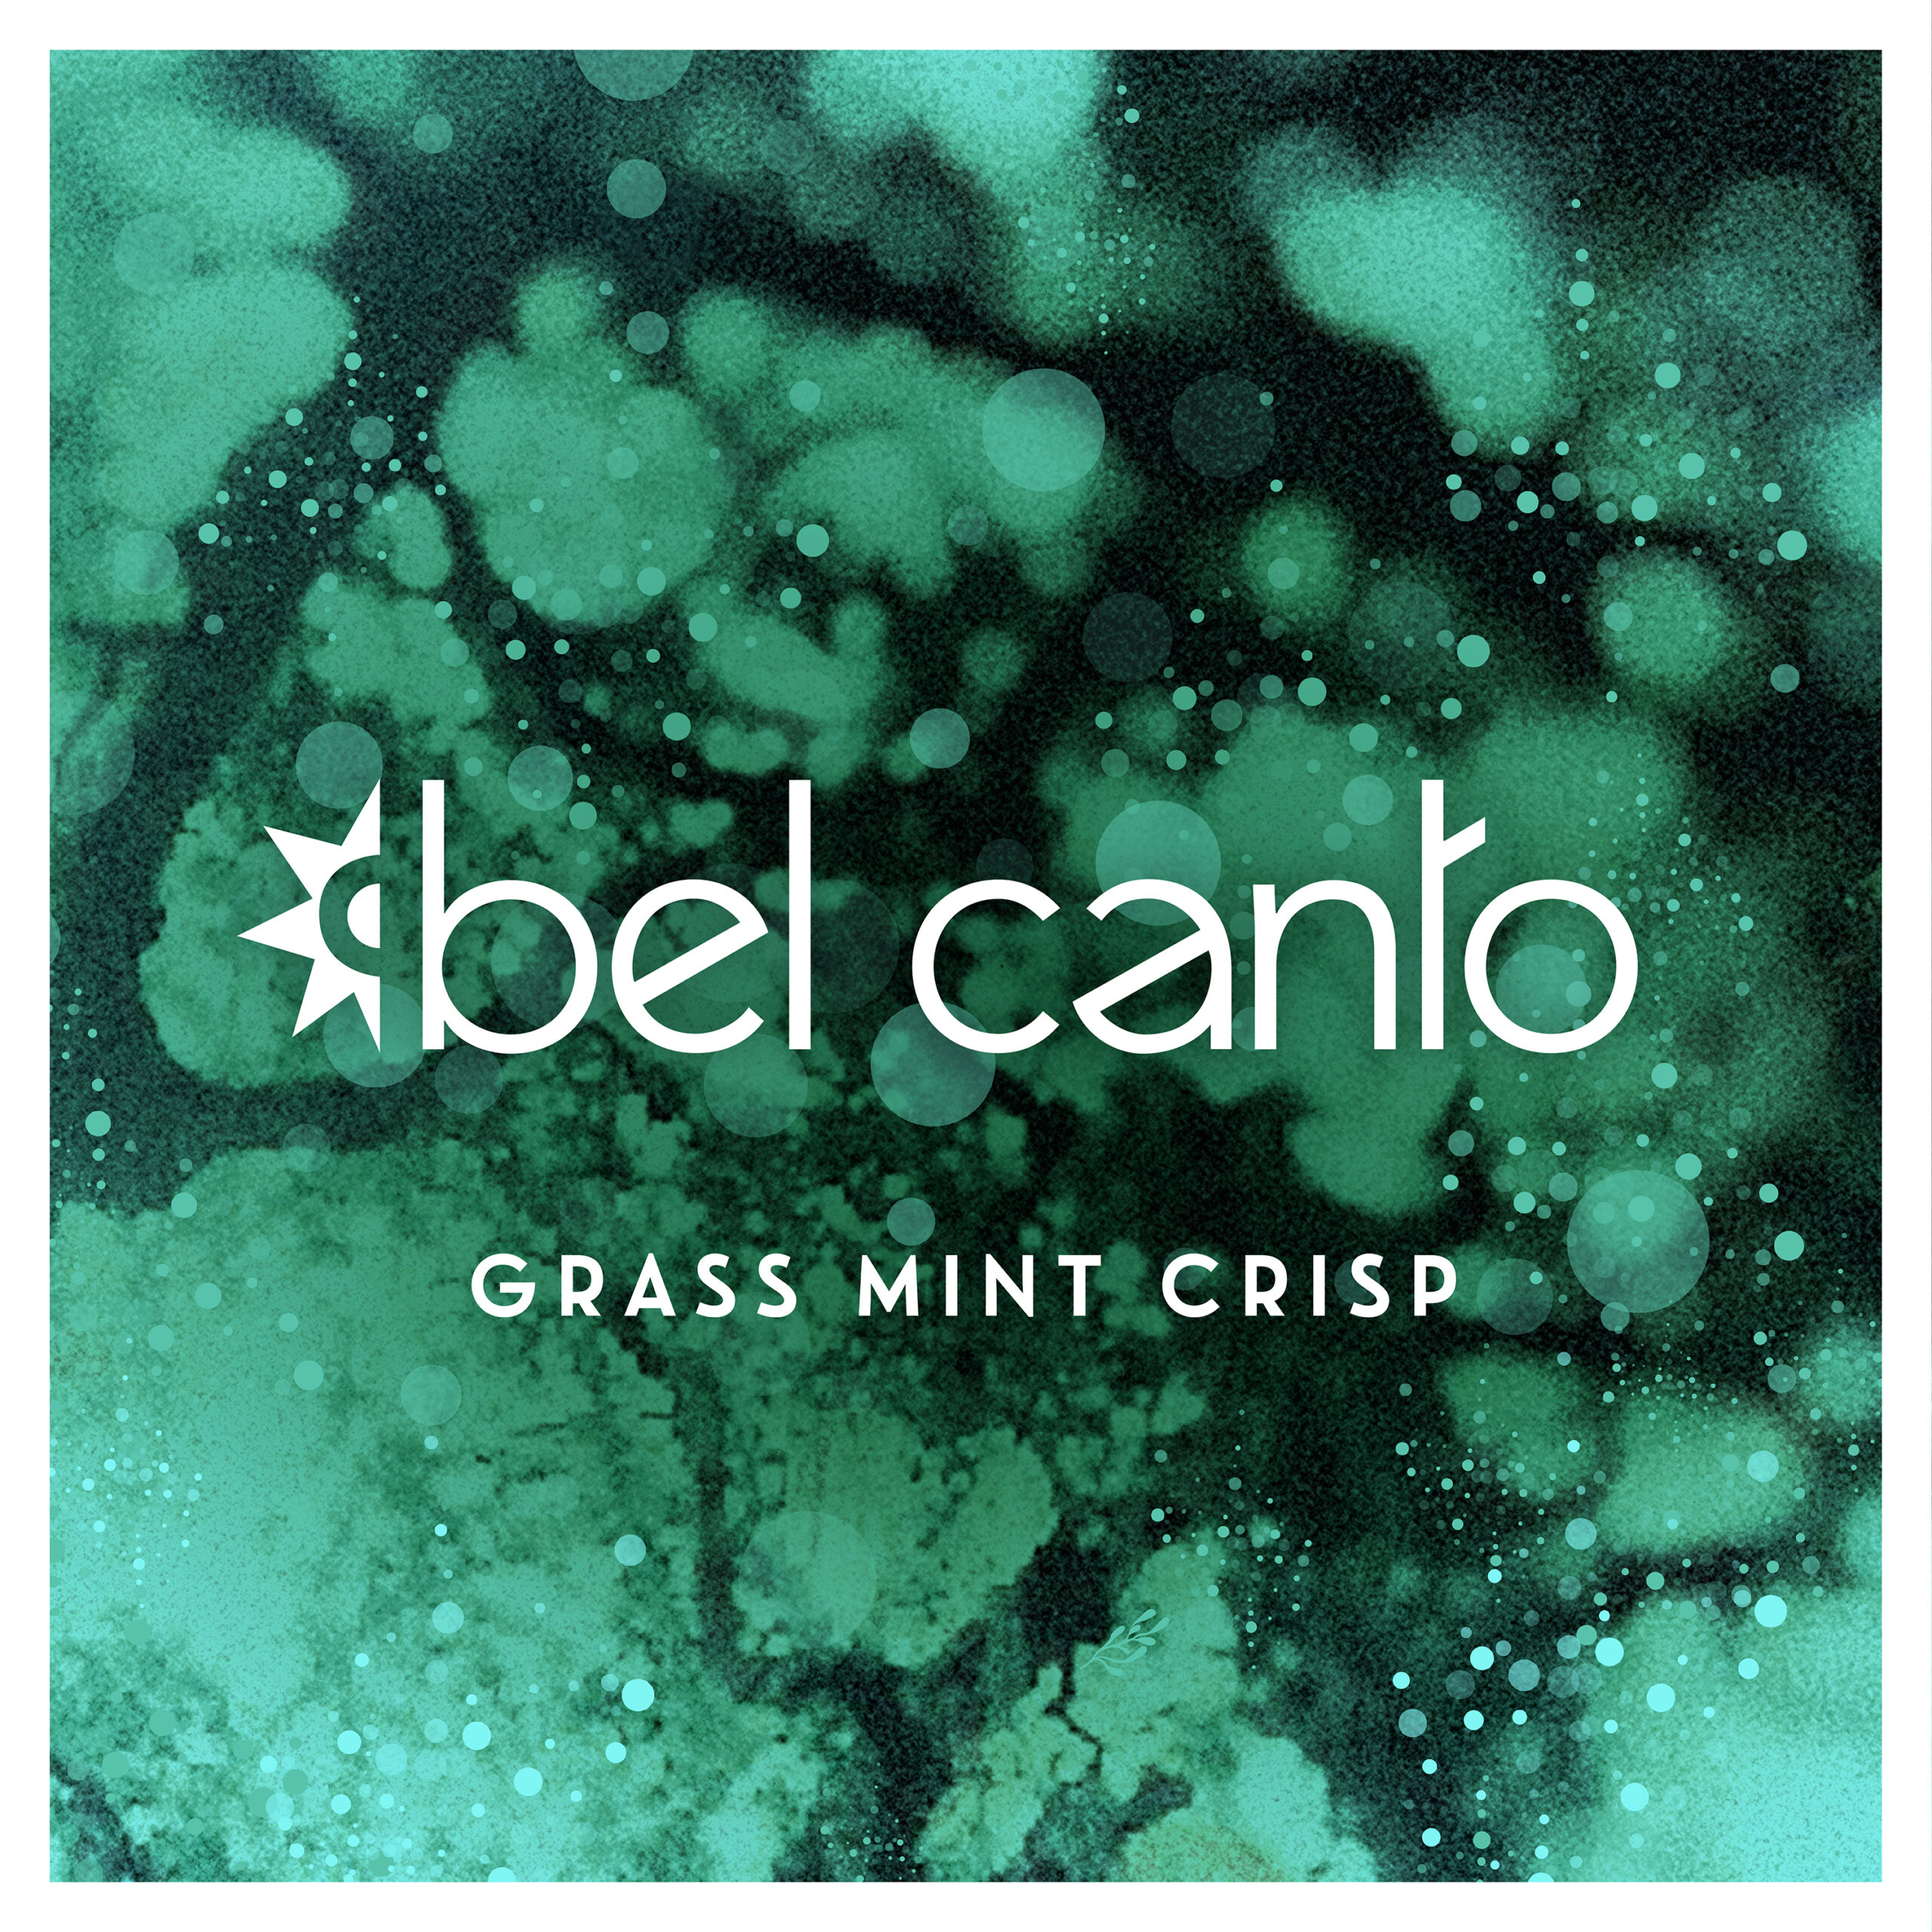 Bel Canto / Grass Mint Crisp